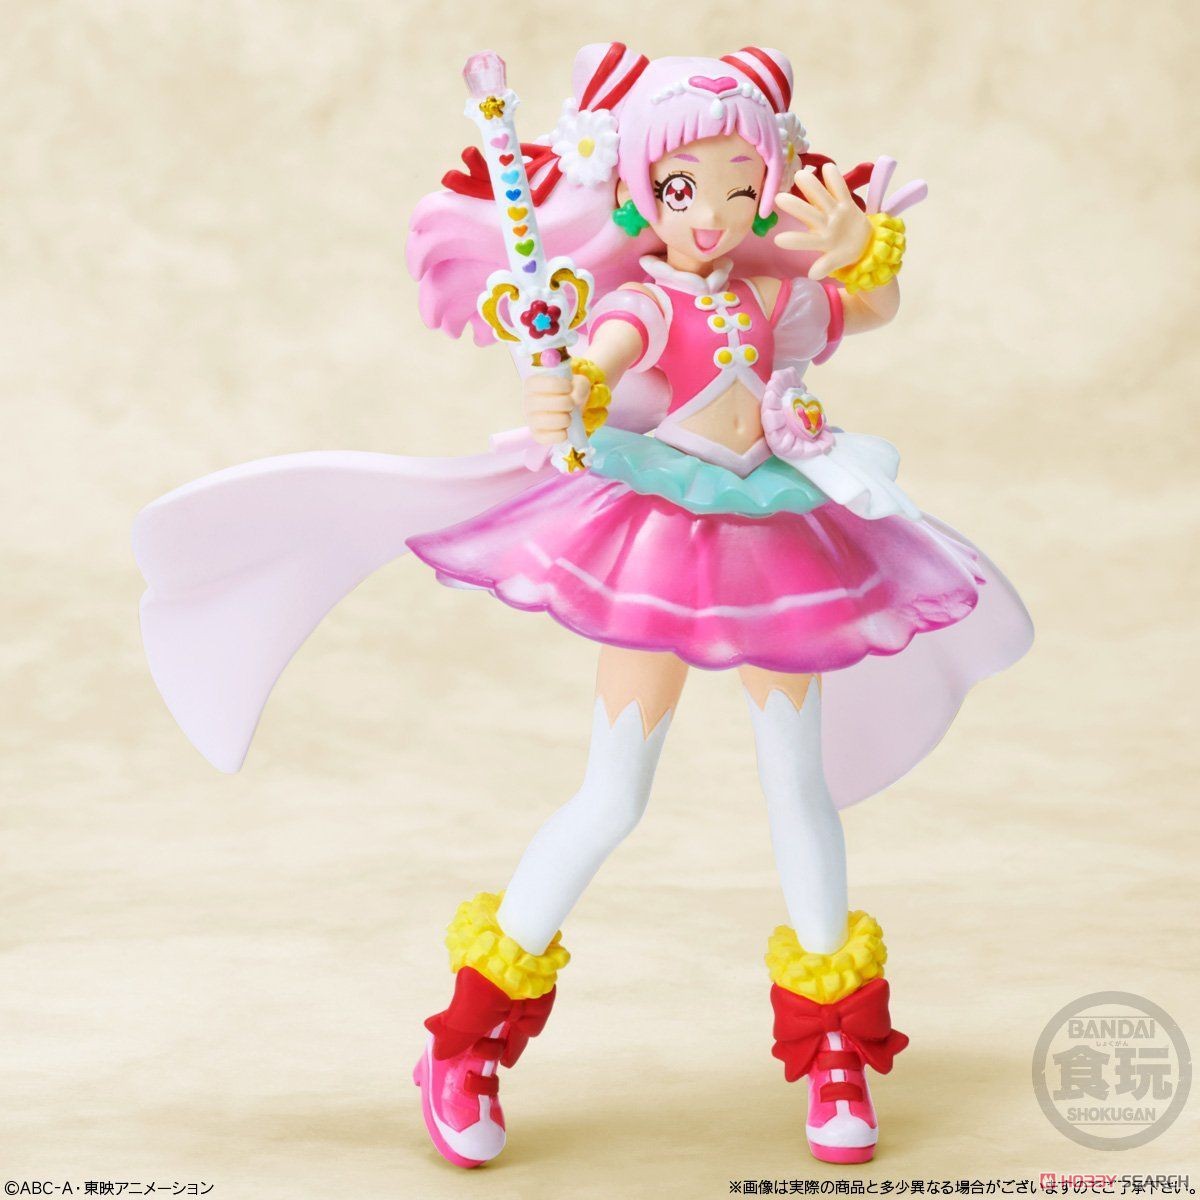 Hugtto! Precure Cutie Figure 2 Special Set (Shokugan) Item picture6